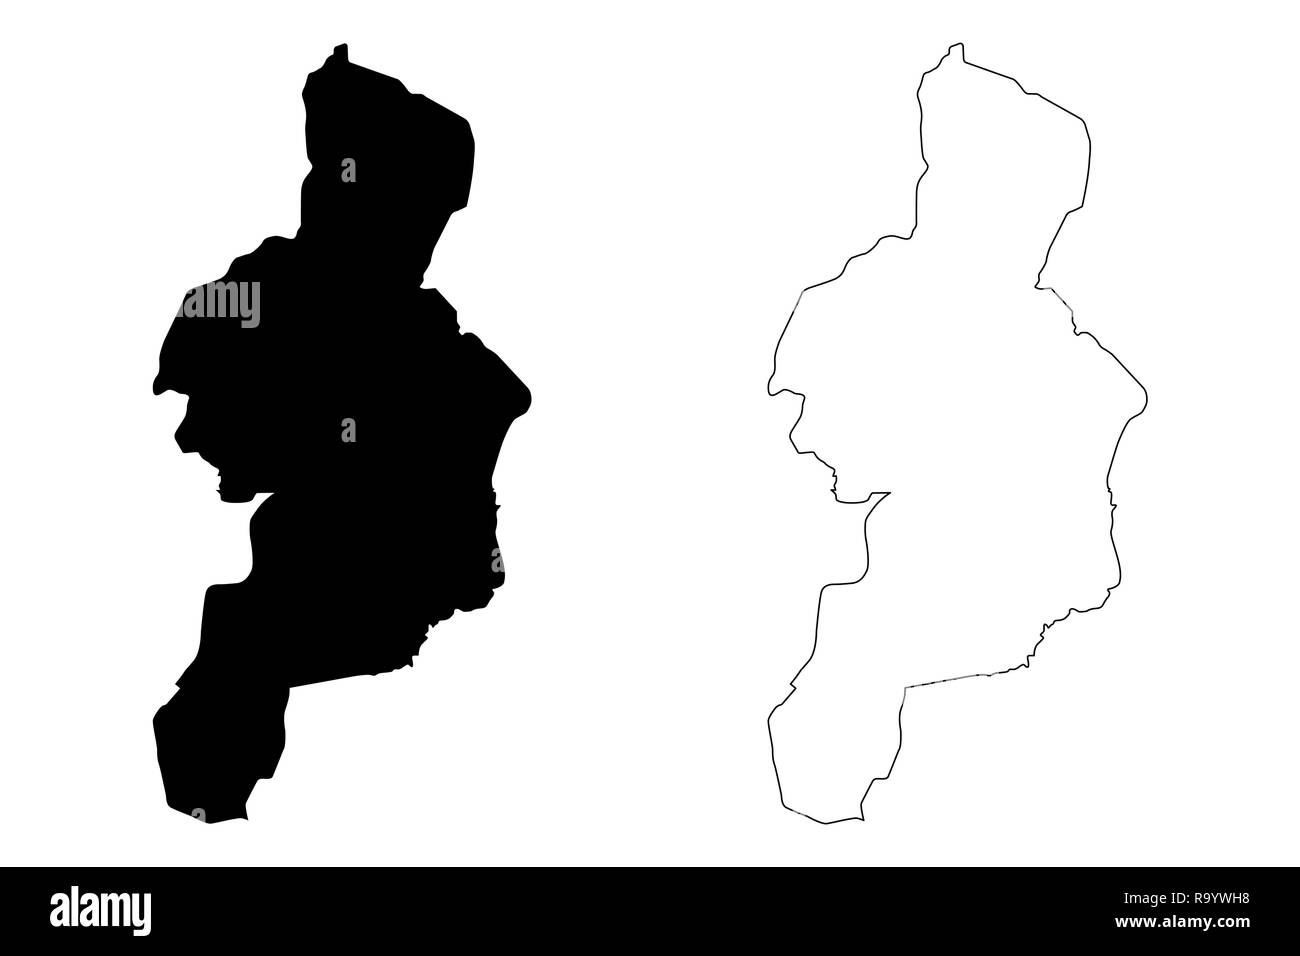 Cordillera Administrative Region (Regionen und Provinzen der Philippinen, die Republik der Philippinen) Karte Vektor-illustration, kritzeln Skizze Netzkabel Stock Vektor